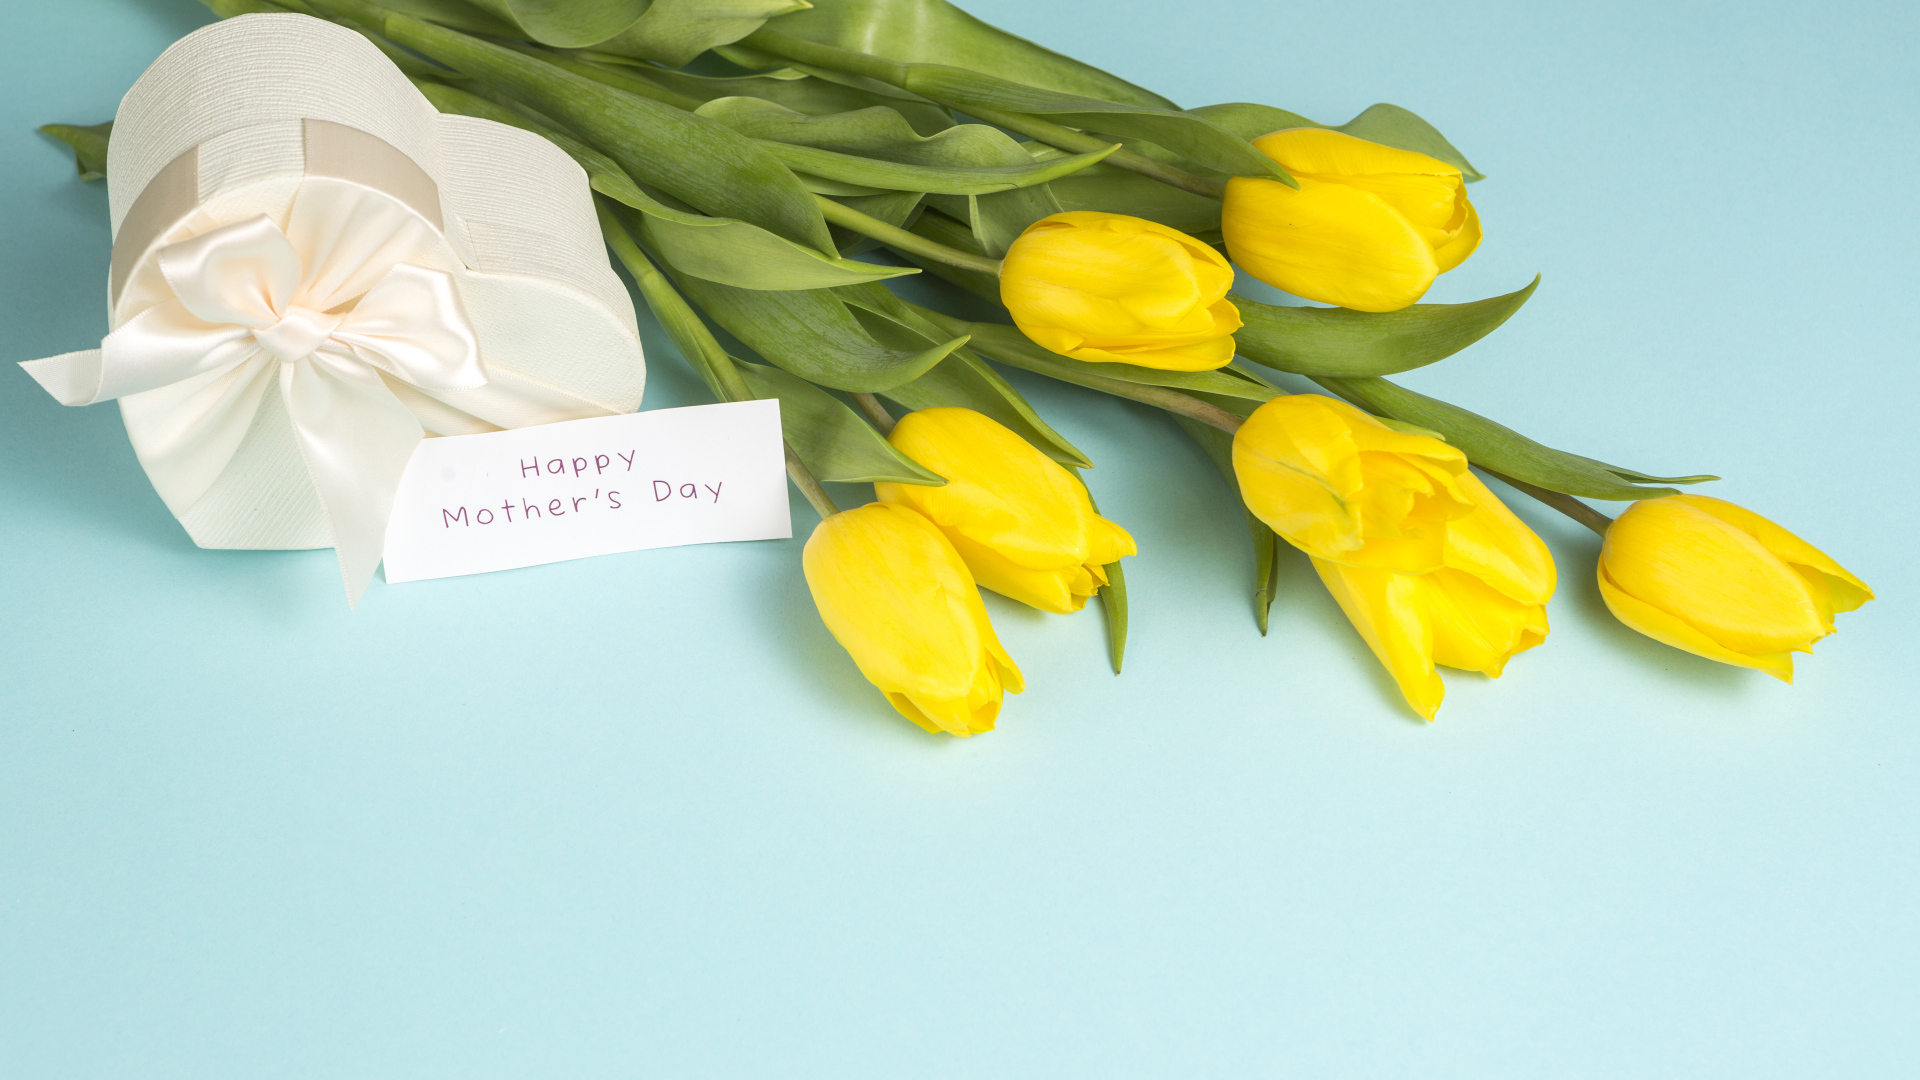 Желтые тюльпаны с подарком на голубом фоне на день матери